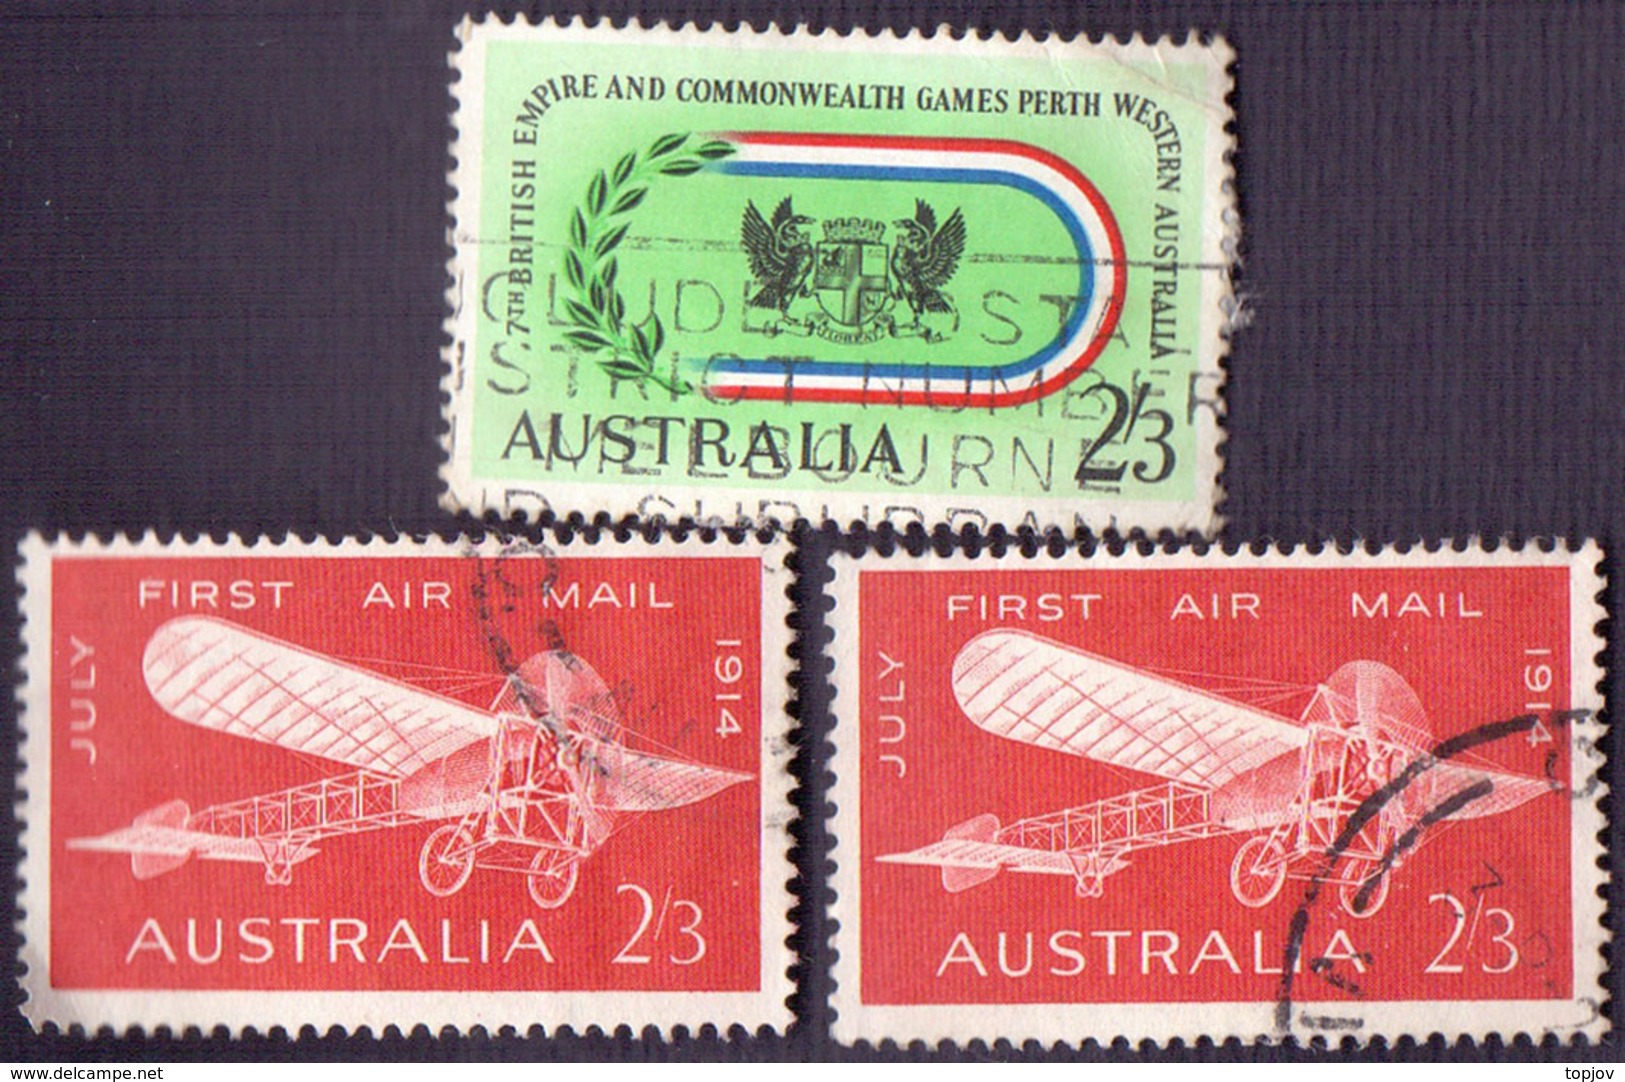 AUSTRALIA - AIRMAIL  LOT - Used - Usati